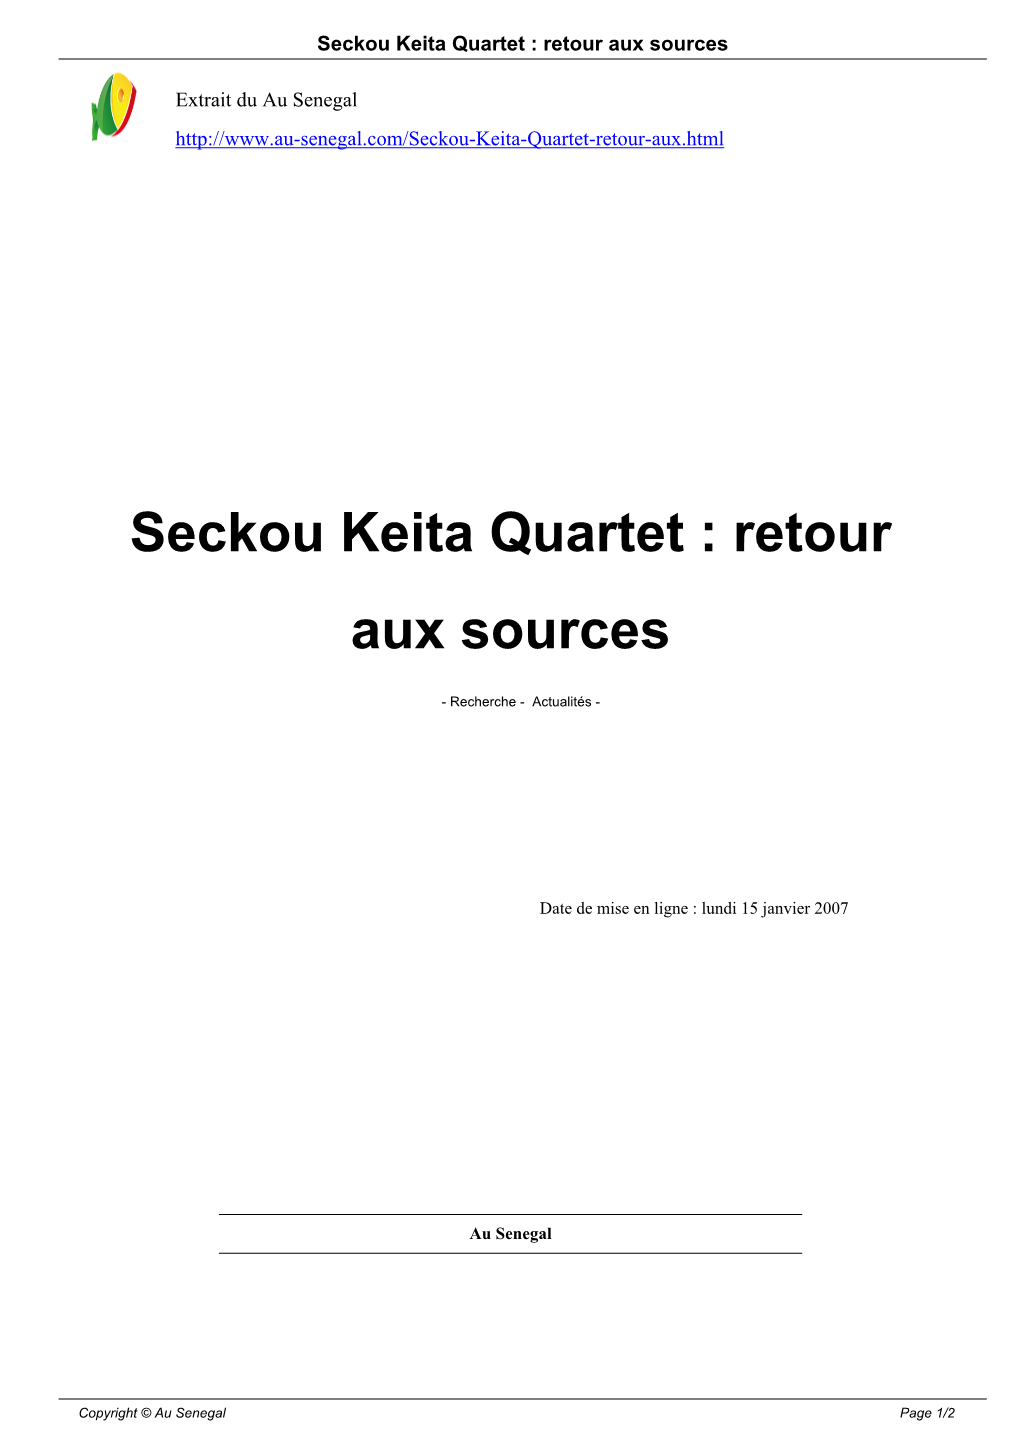 Seckou Keita Quartet : Retour Aux Sources